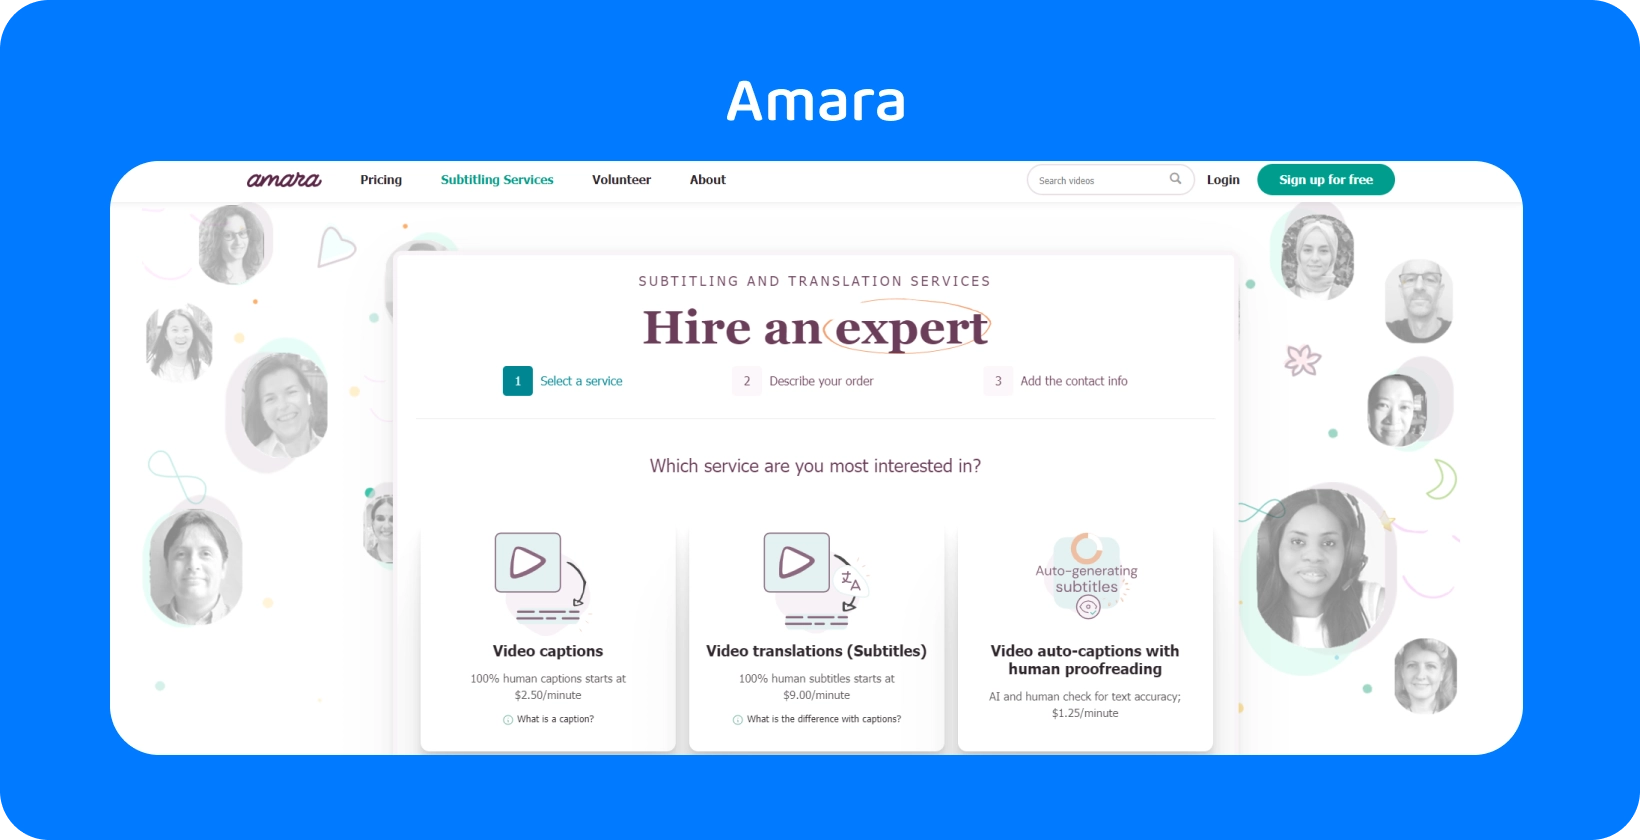 Amara'nin web sayfası, çevrimiçi videolara nasıl kolayca altyazı ekleneceğini ve izleyici erişilebilirliğini nasıl artıracağını gösteriyor.